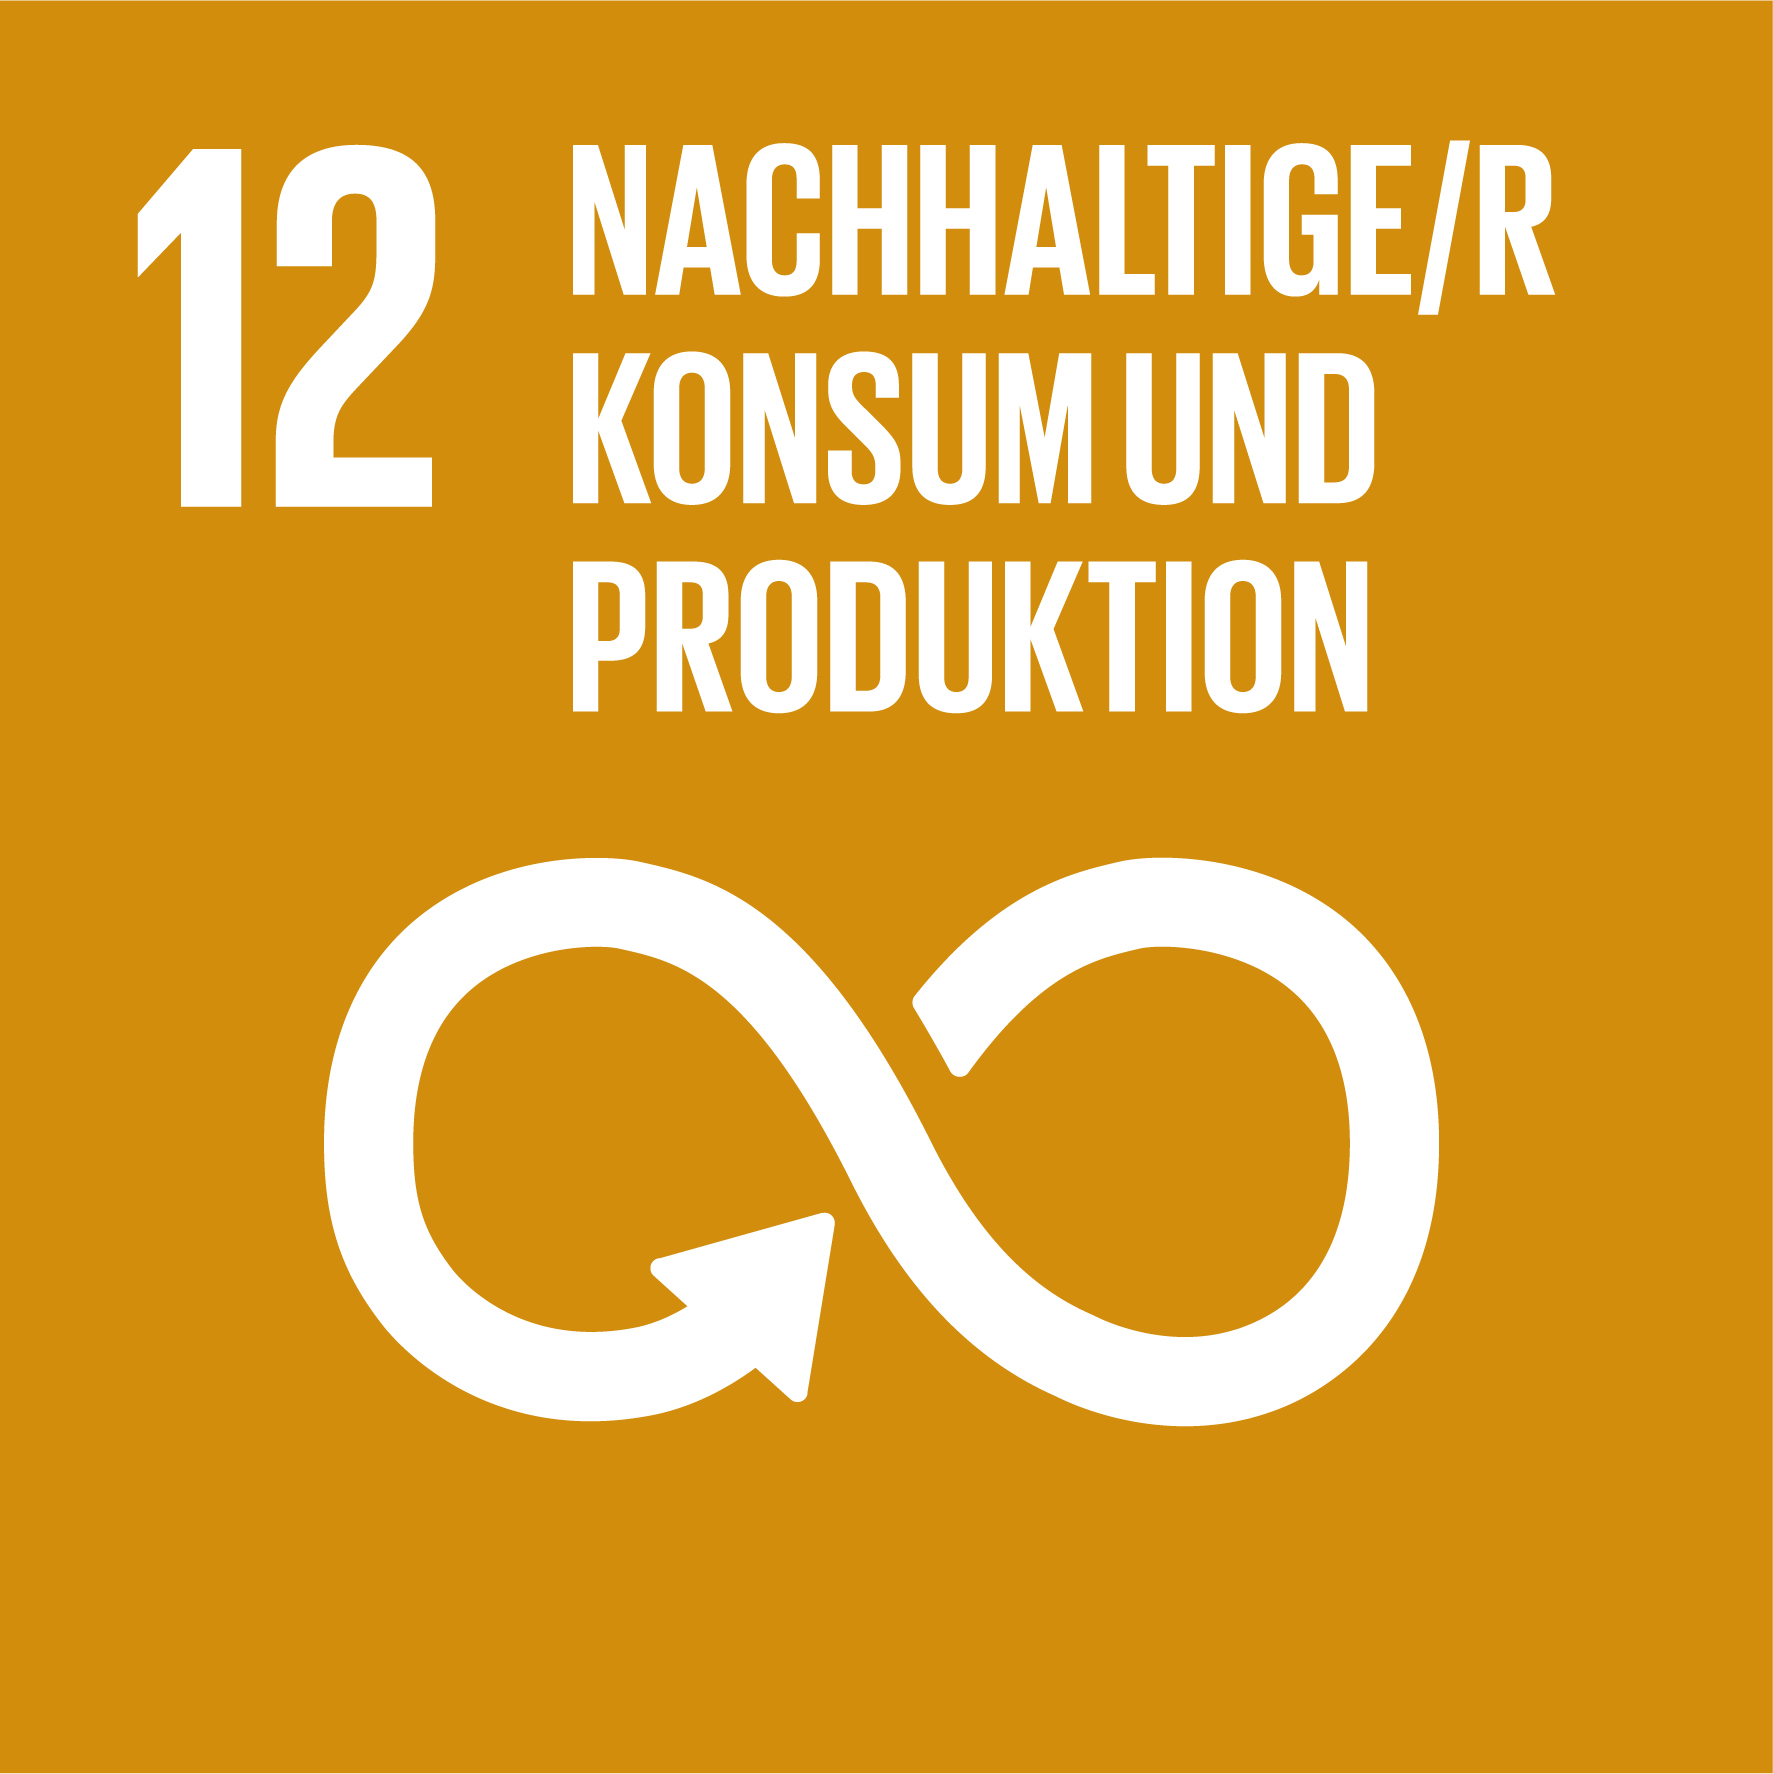 SGD 12: Nachhaltige/r Konsum und Produktion